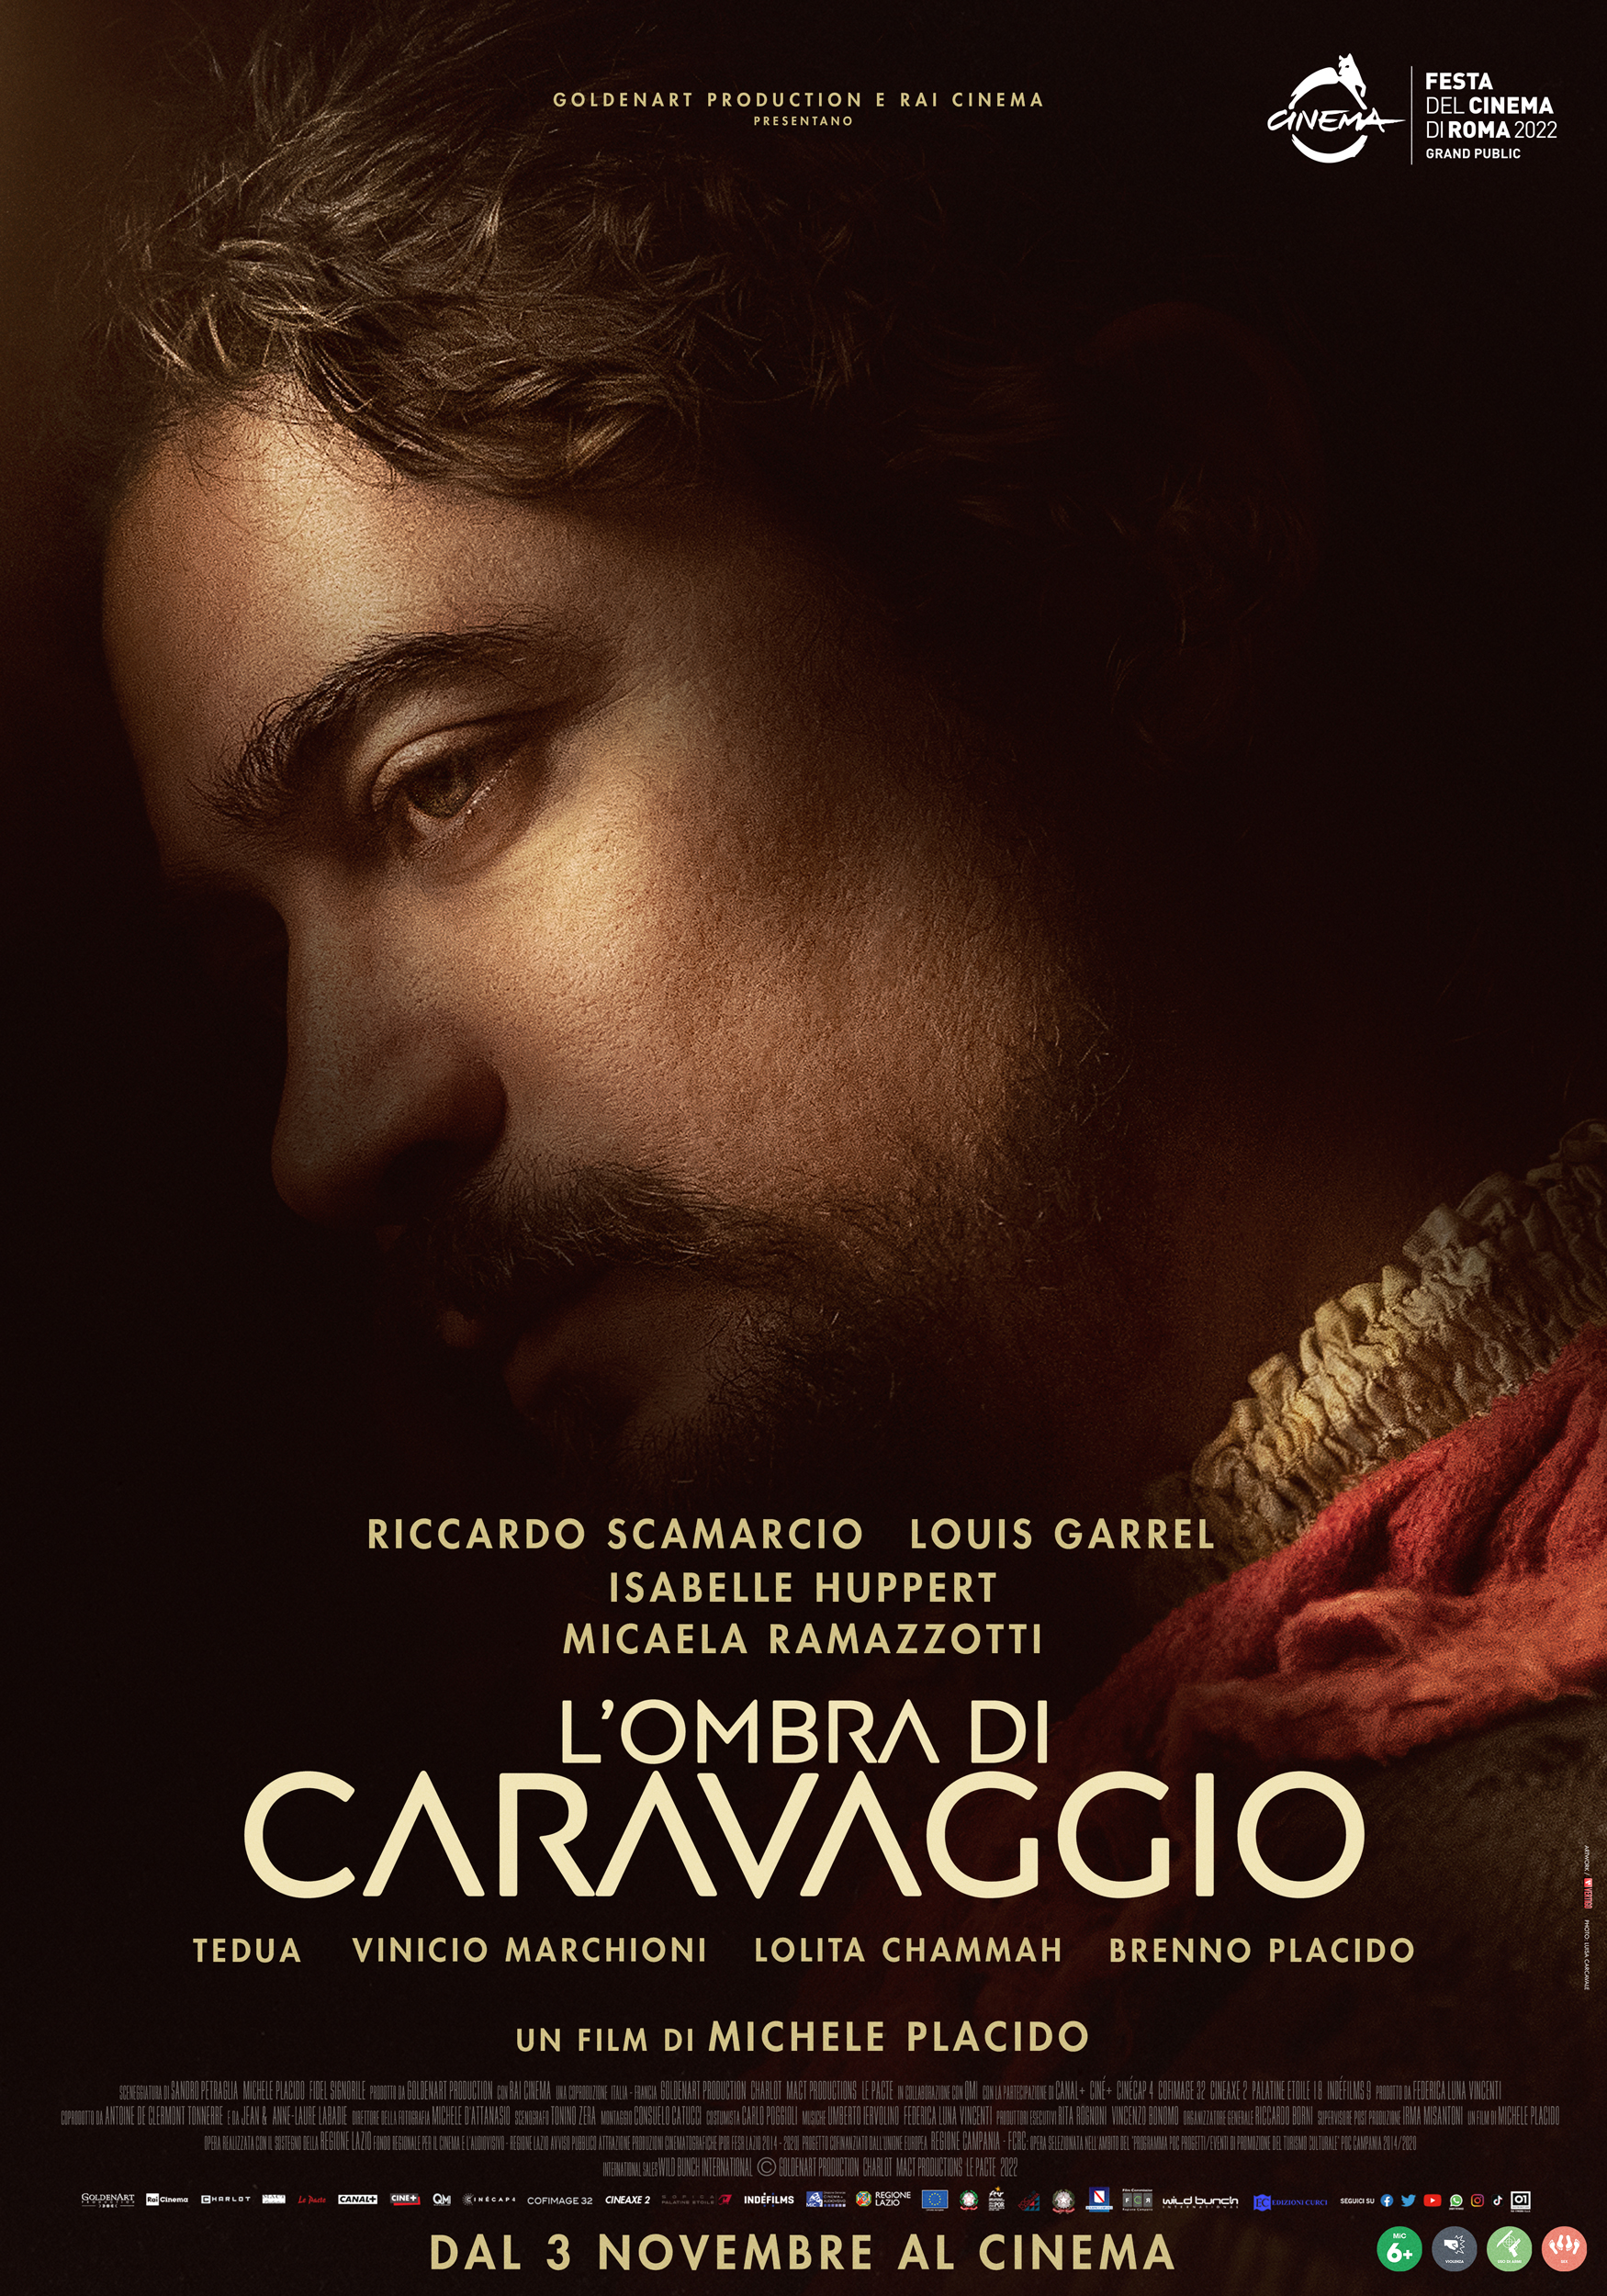 "L'ombra di Caravaggio" di Michele Placido con Riccardo Scamarcio dal 3 novembre al cinema